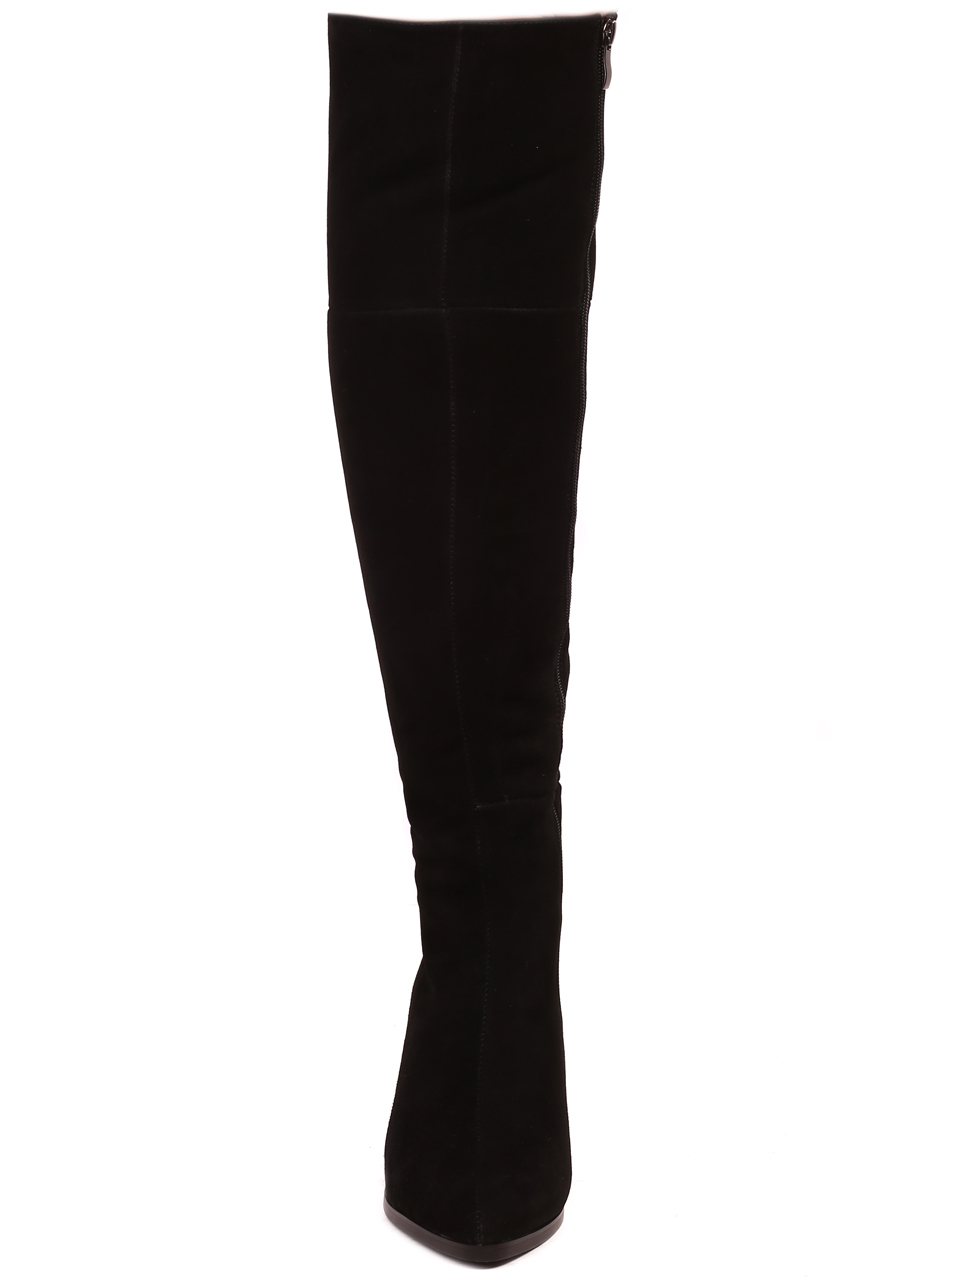 Eлегантни дамски ботуши от естествен велур в черно 1I-23613 black